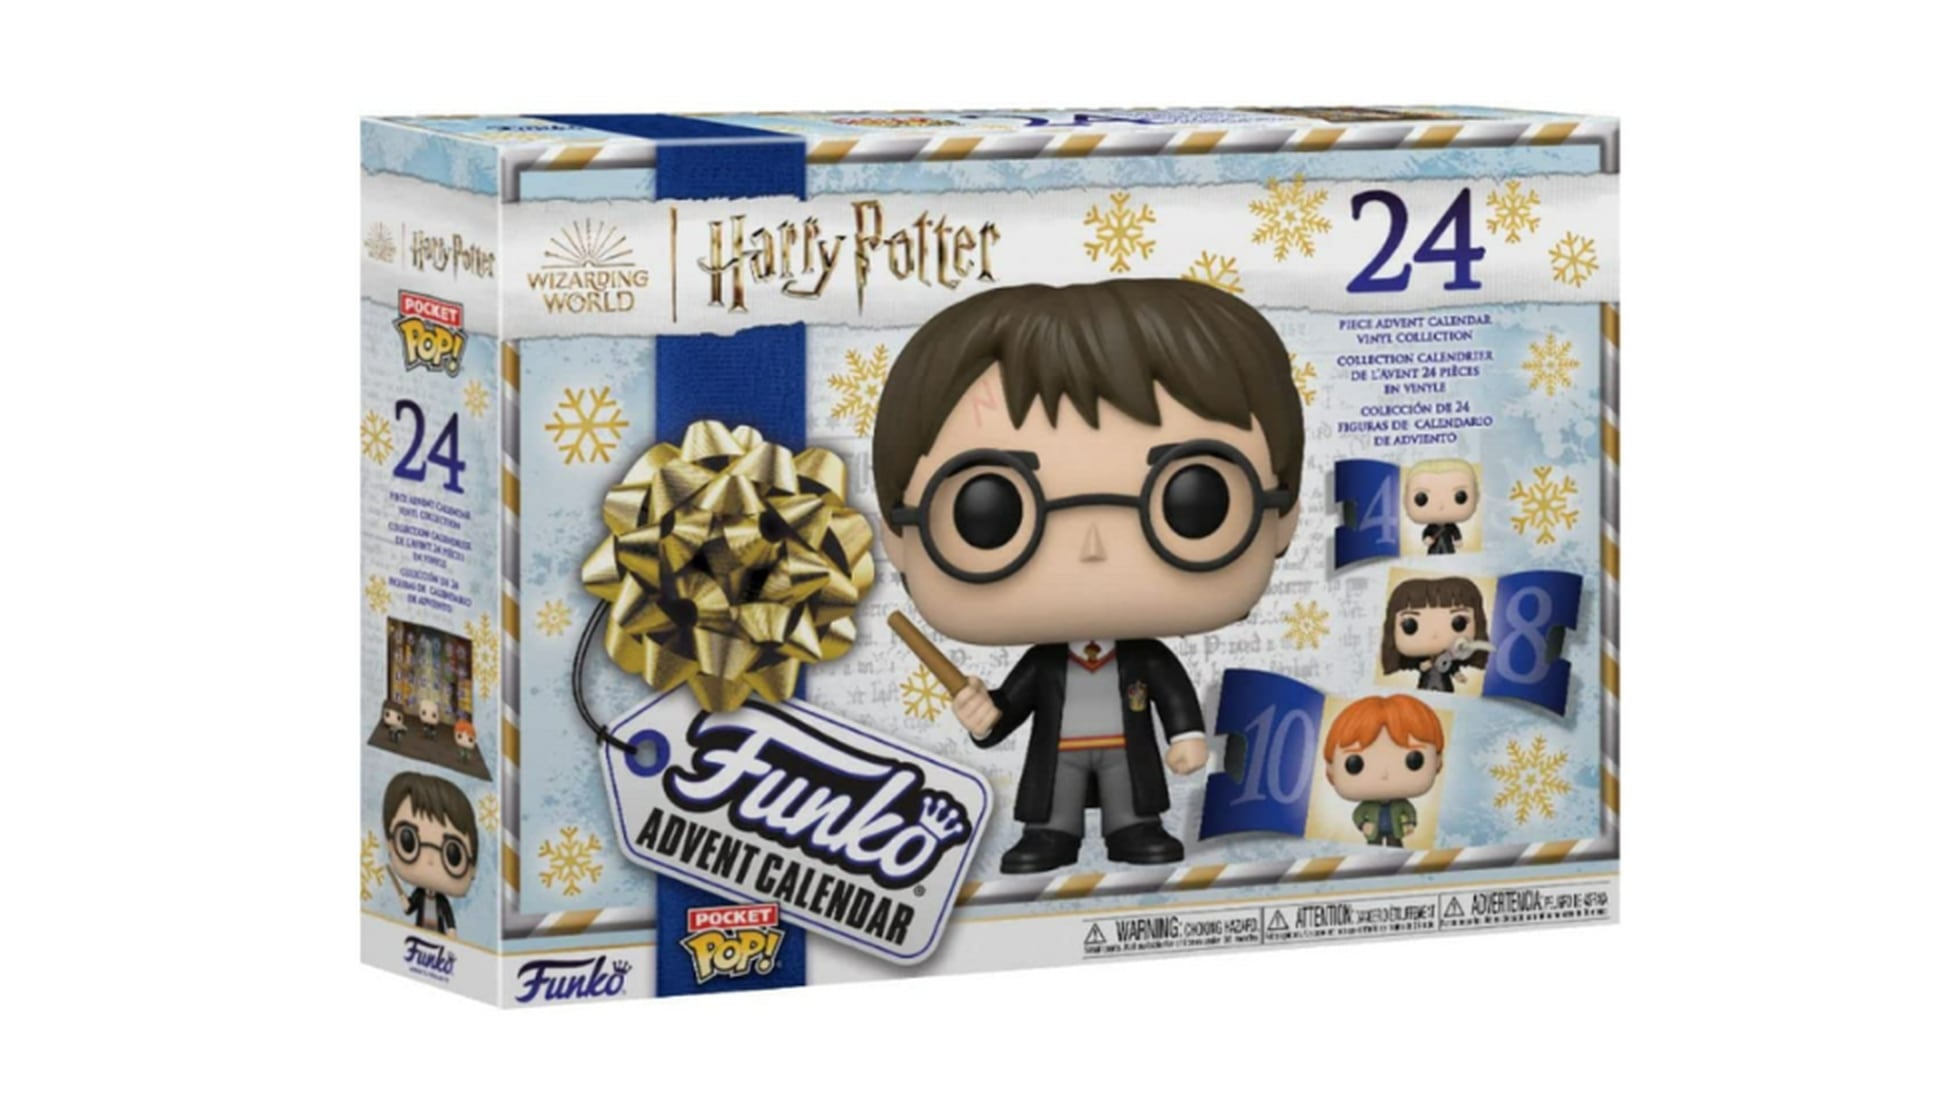 Caprichos - Ideas para regalar ¡Harry Potter!  #caprichosbenavente#ideasregalos #regalosoriginales